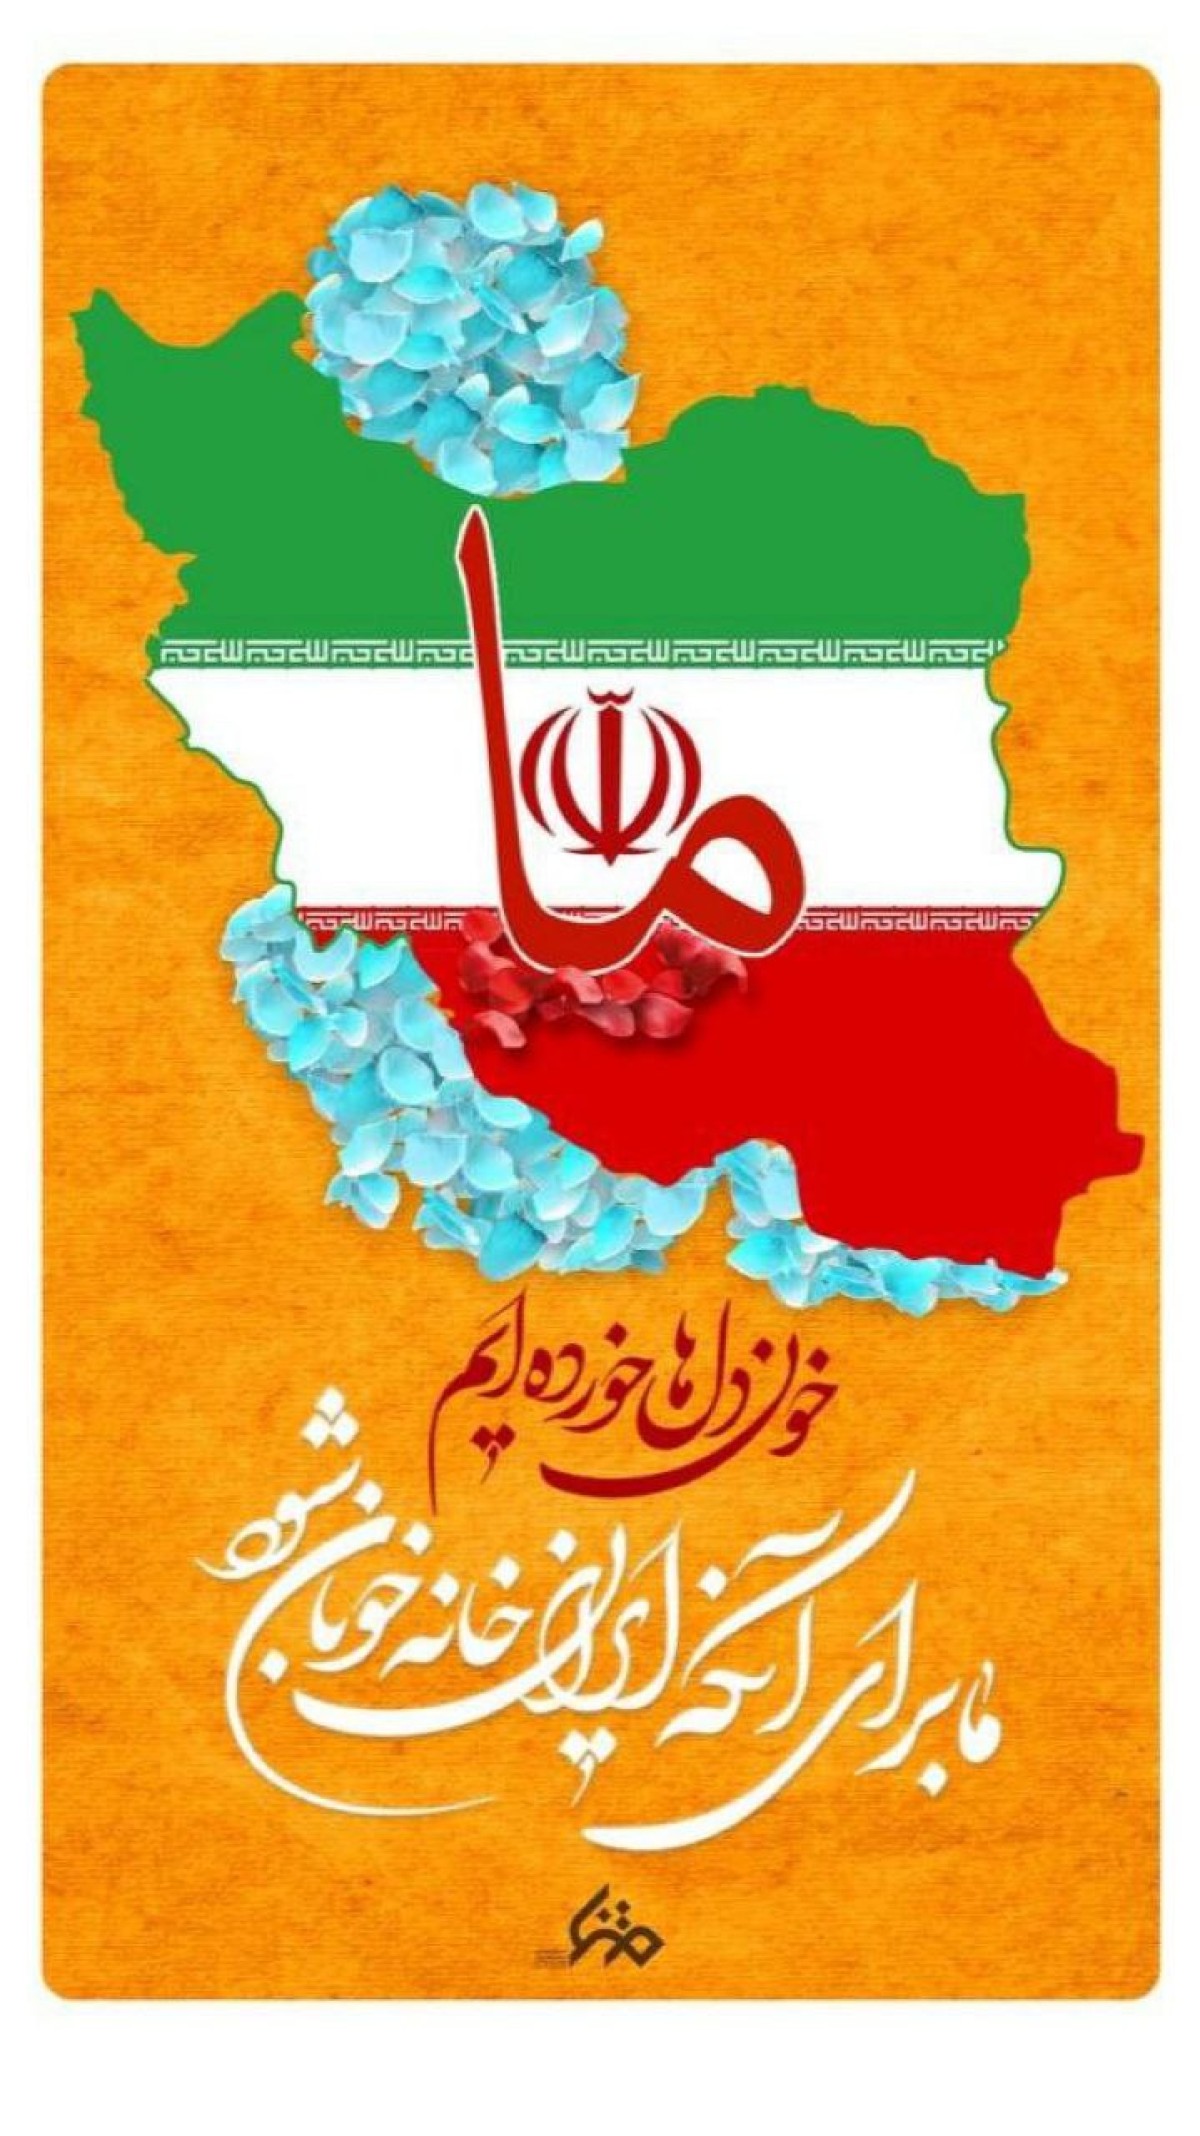 دهه فجر، مقطع رهایی ملت ایران است